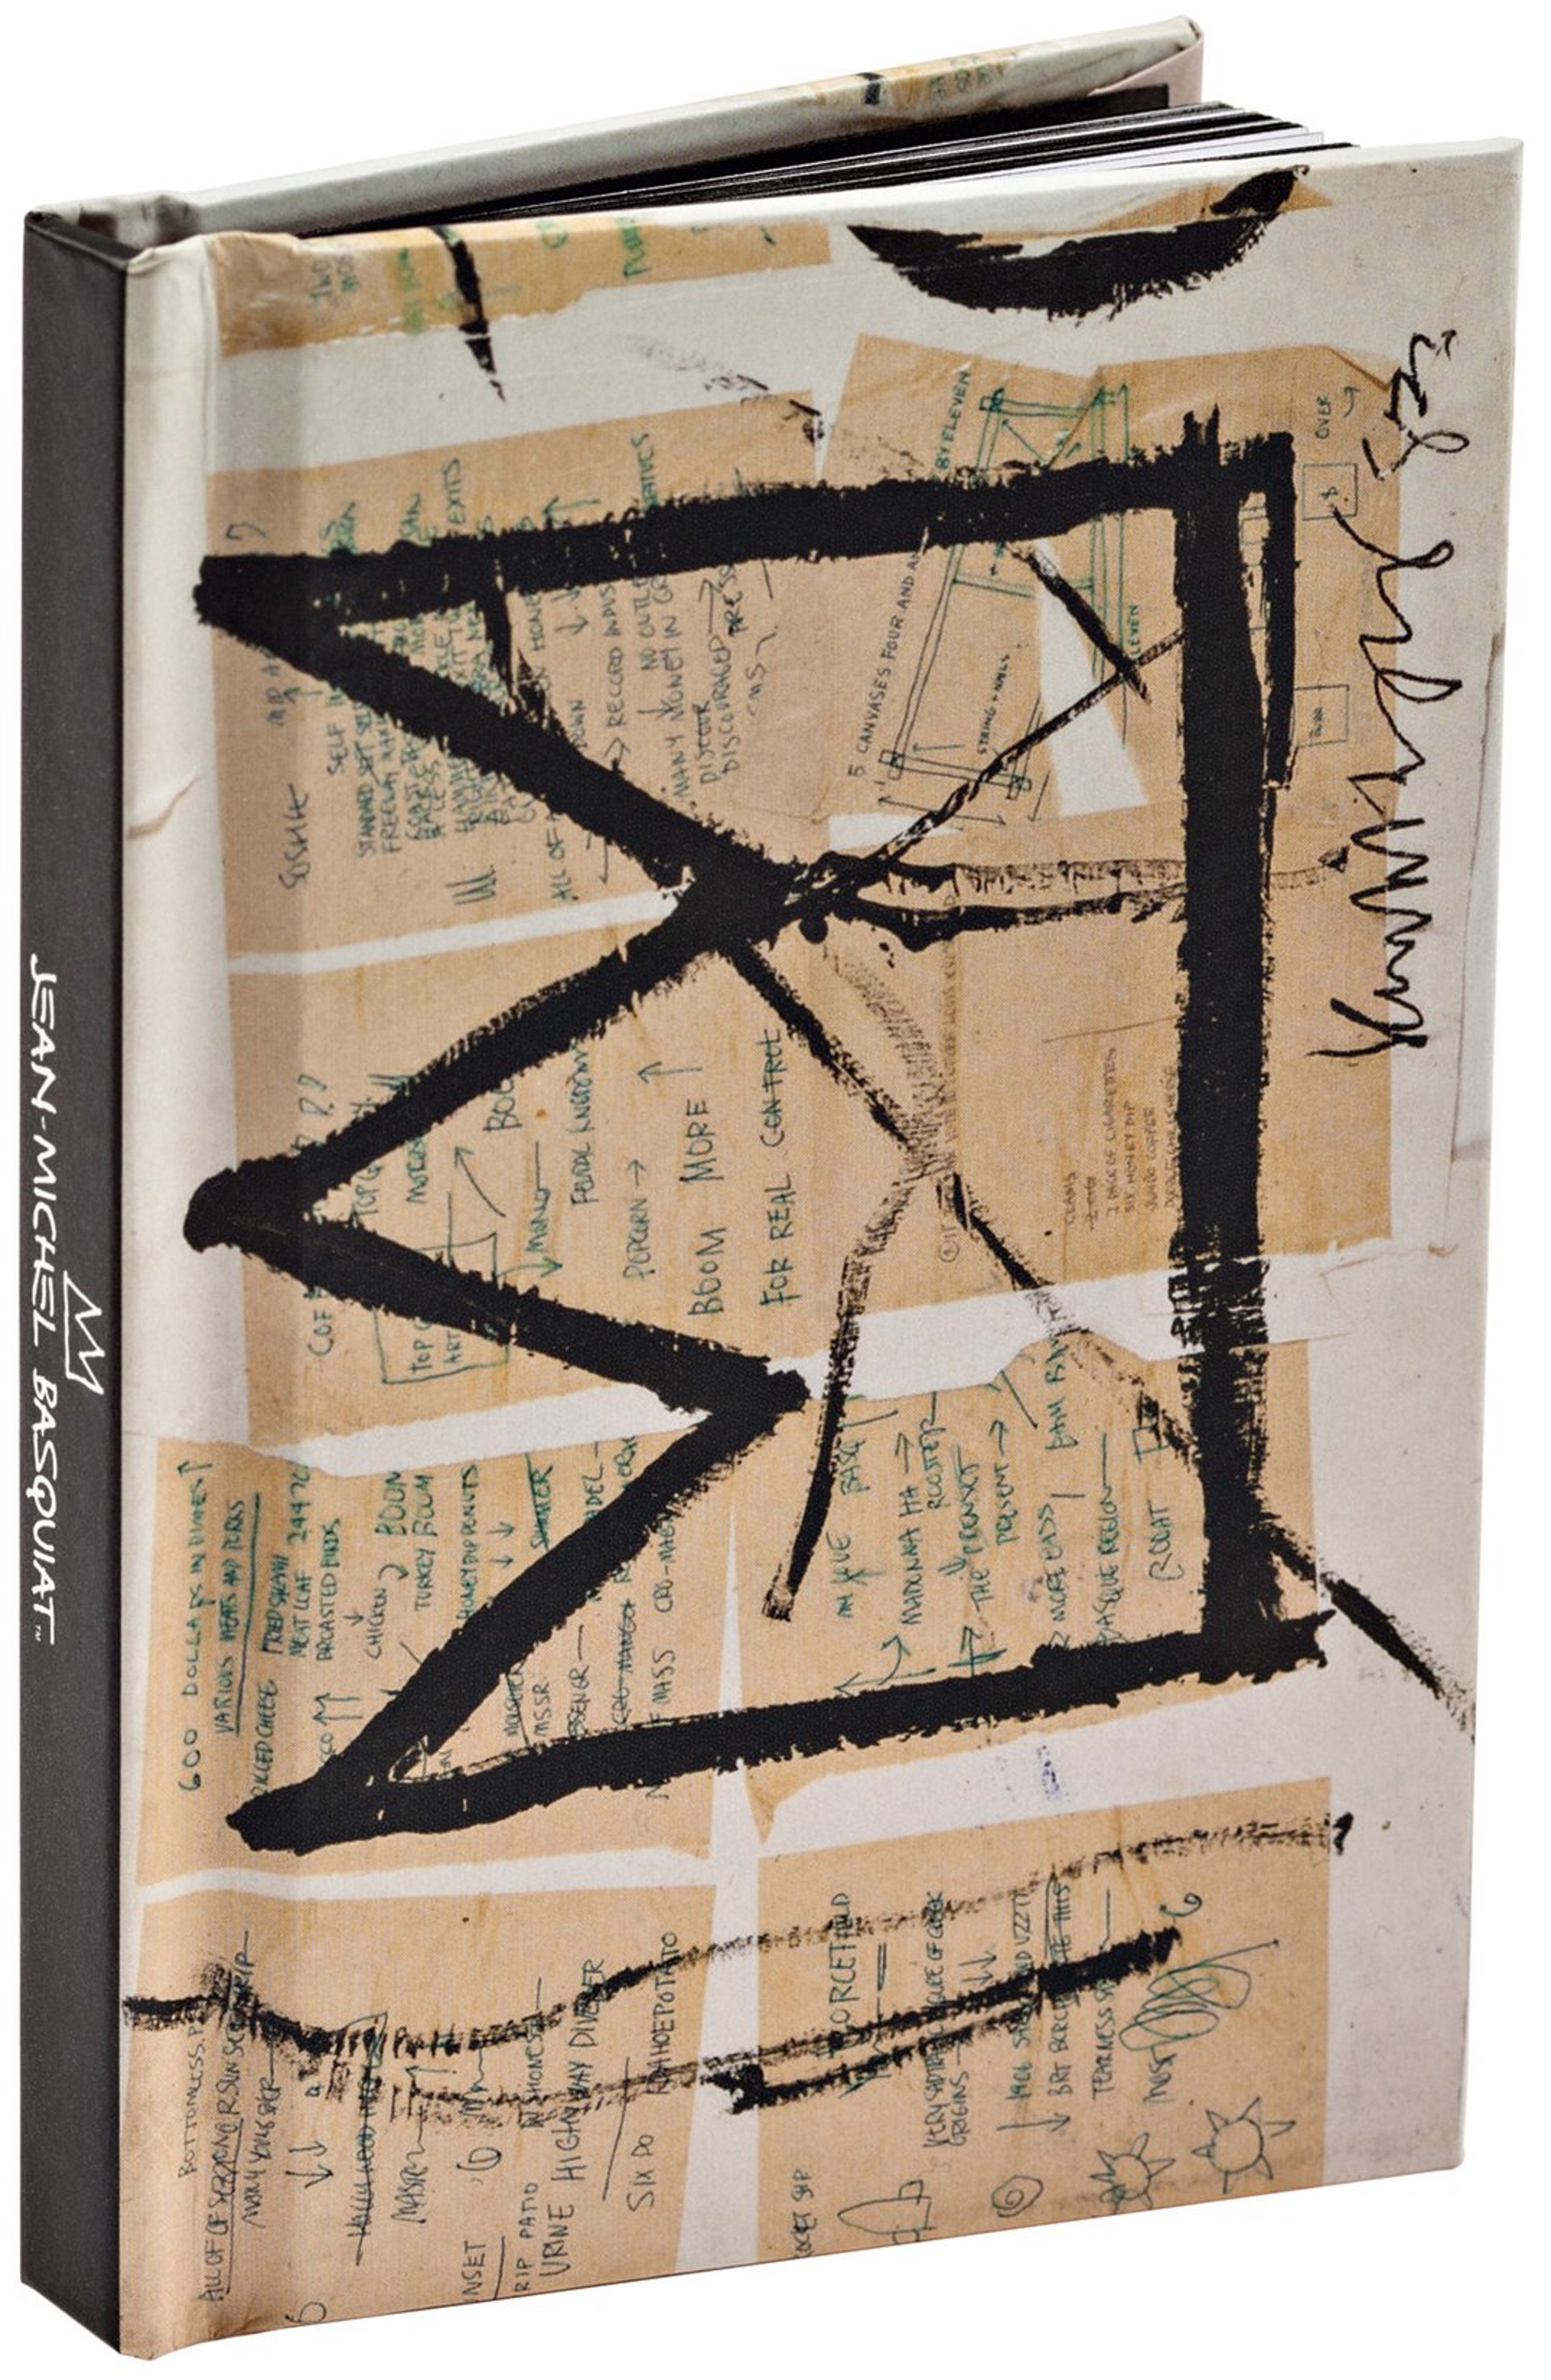 Crown by Jean-Michel Basquiat Mini Notebook by Jean-Michel Basquiat